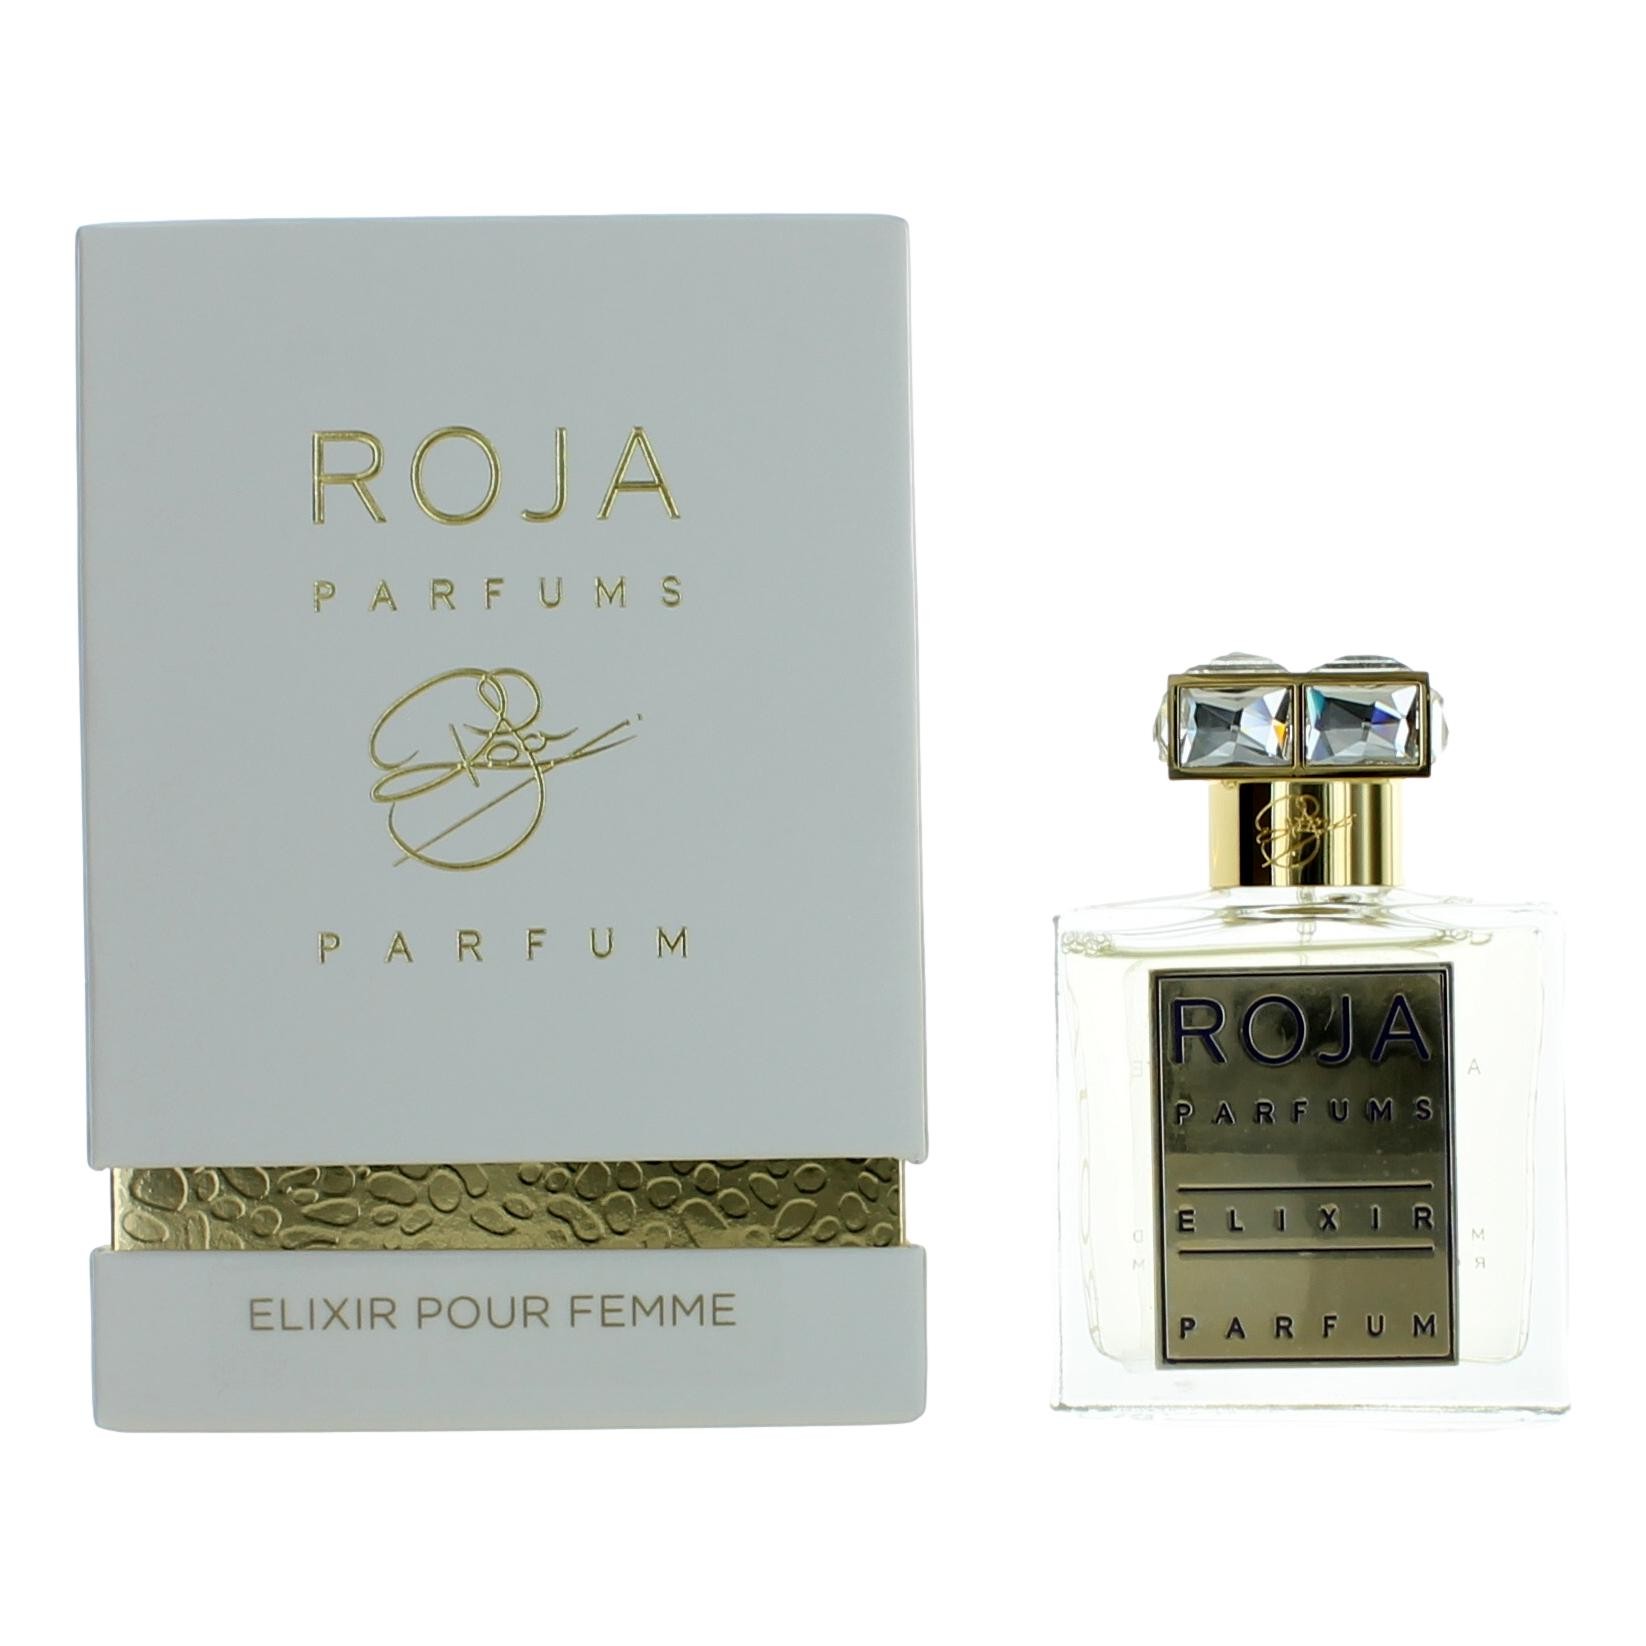 Roja Elixir Pour Femme by Roja Parfums, 1.7 oz Parfum Spray for Women